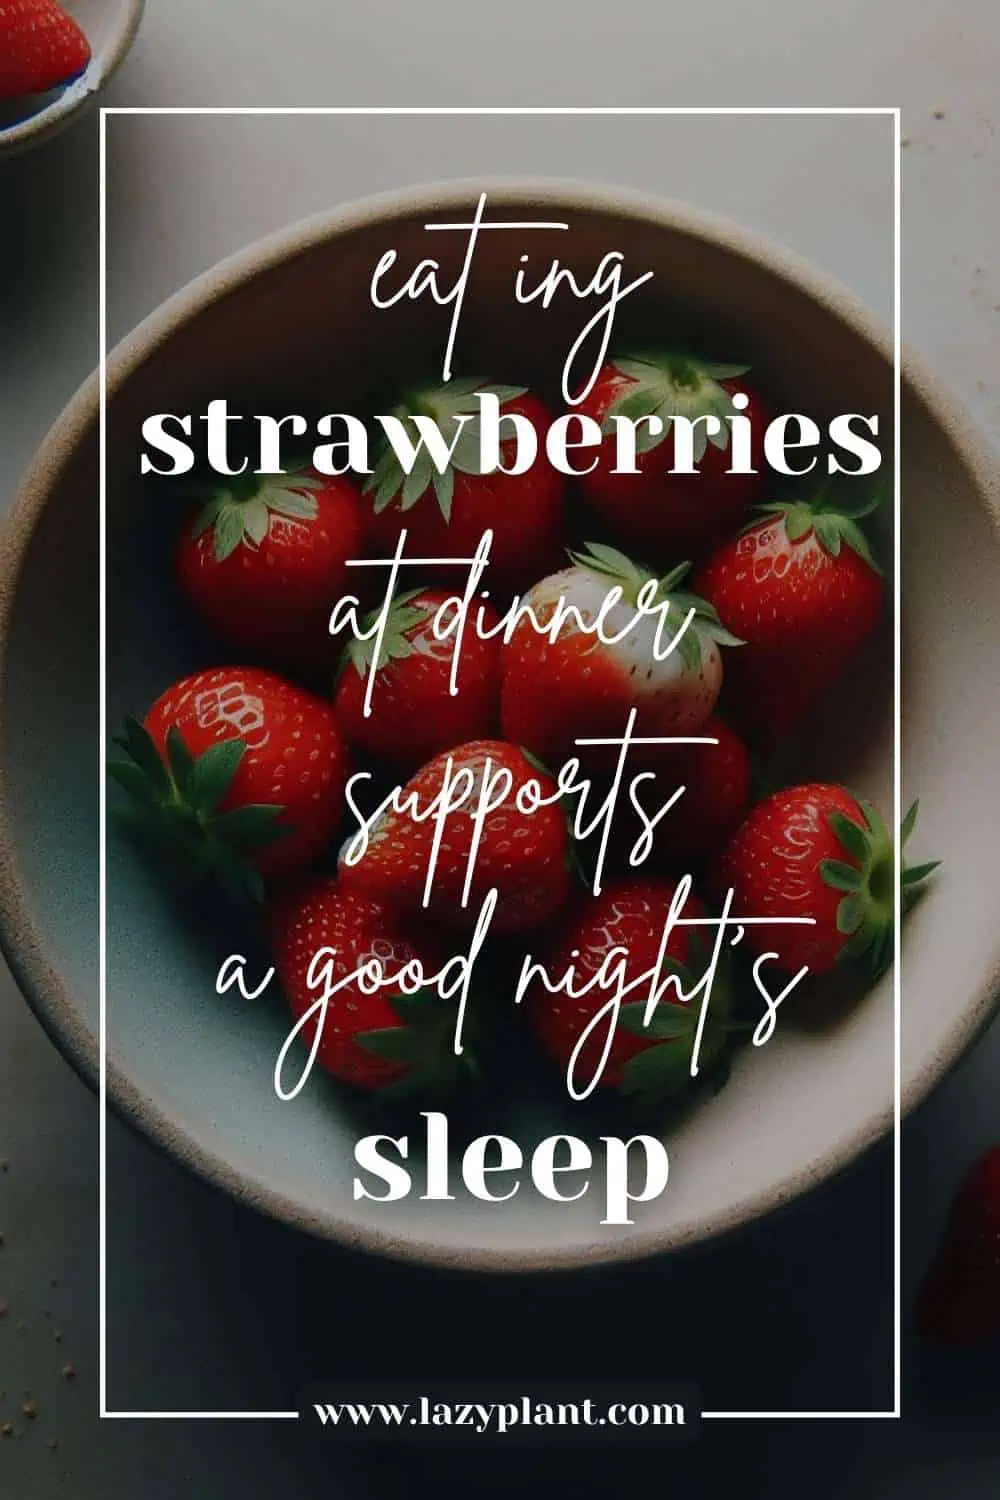 Eat Strawberries at dinner for better Sleep